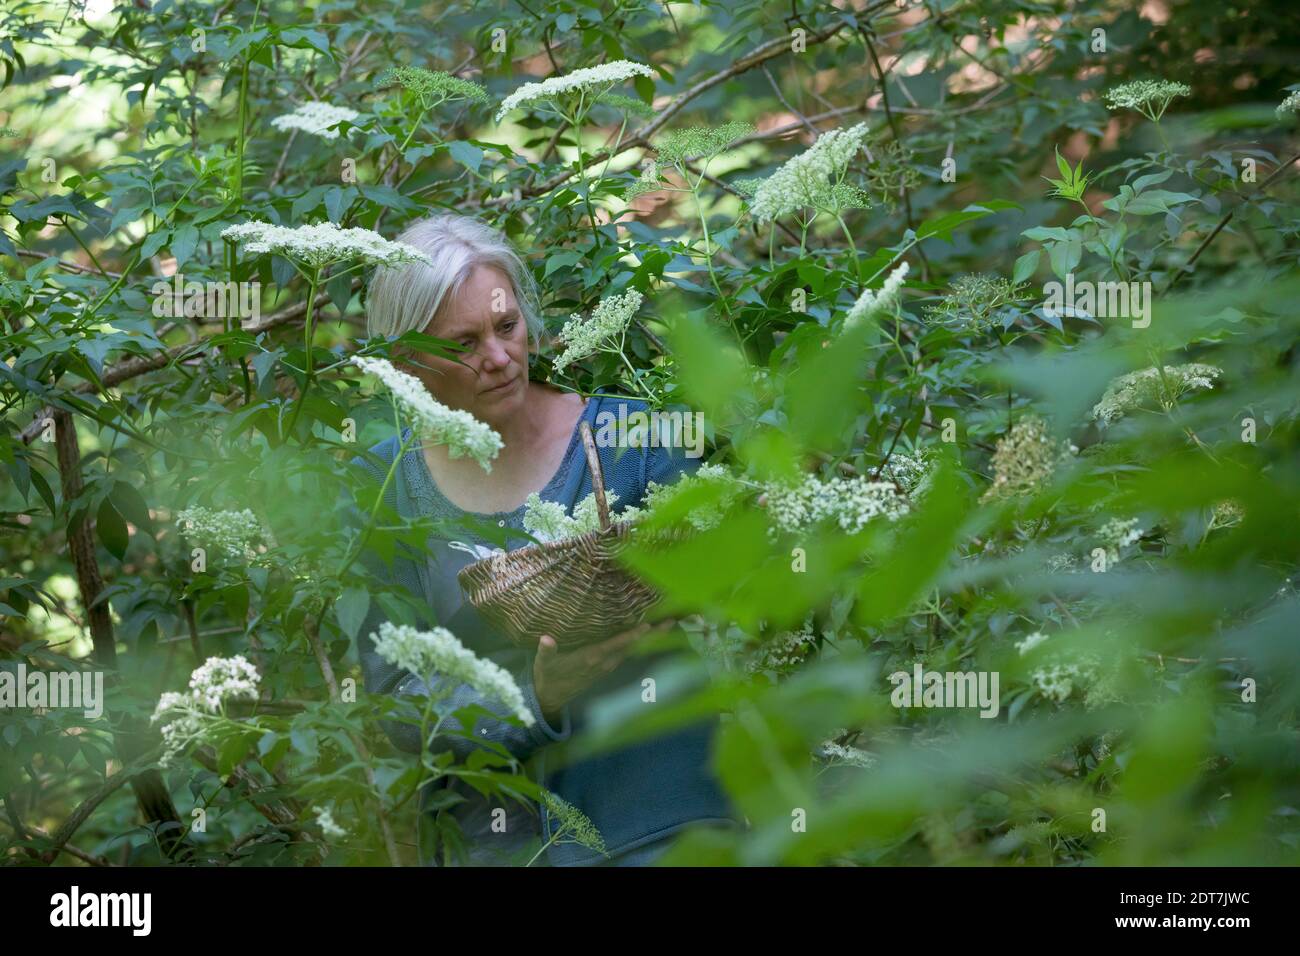 Aîné noir européen, Elderberry, ancien commun (Sambucus nigra), récolte de sureau, femme collectant des sureau dans un panier, Allemagne Banque D'Images